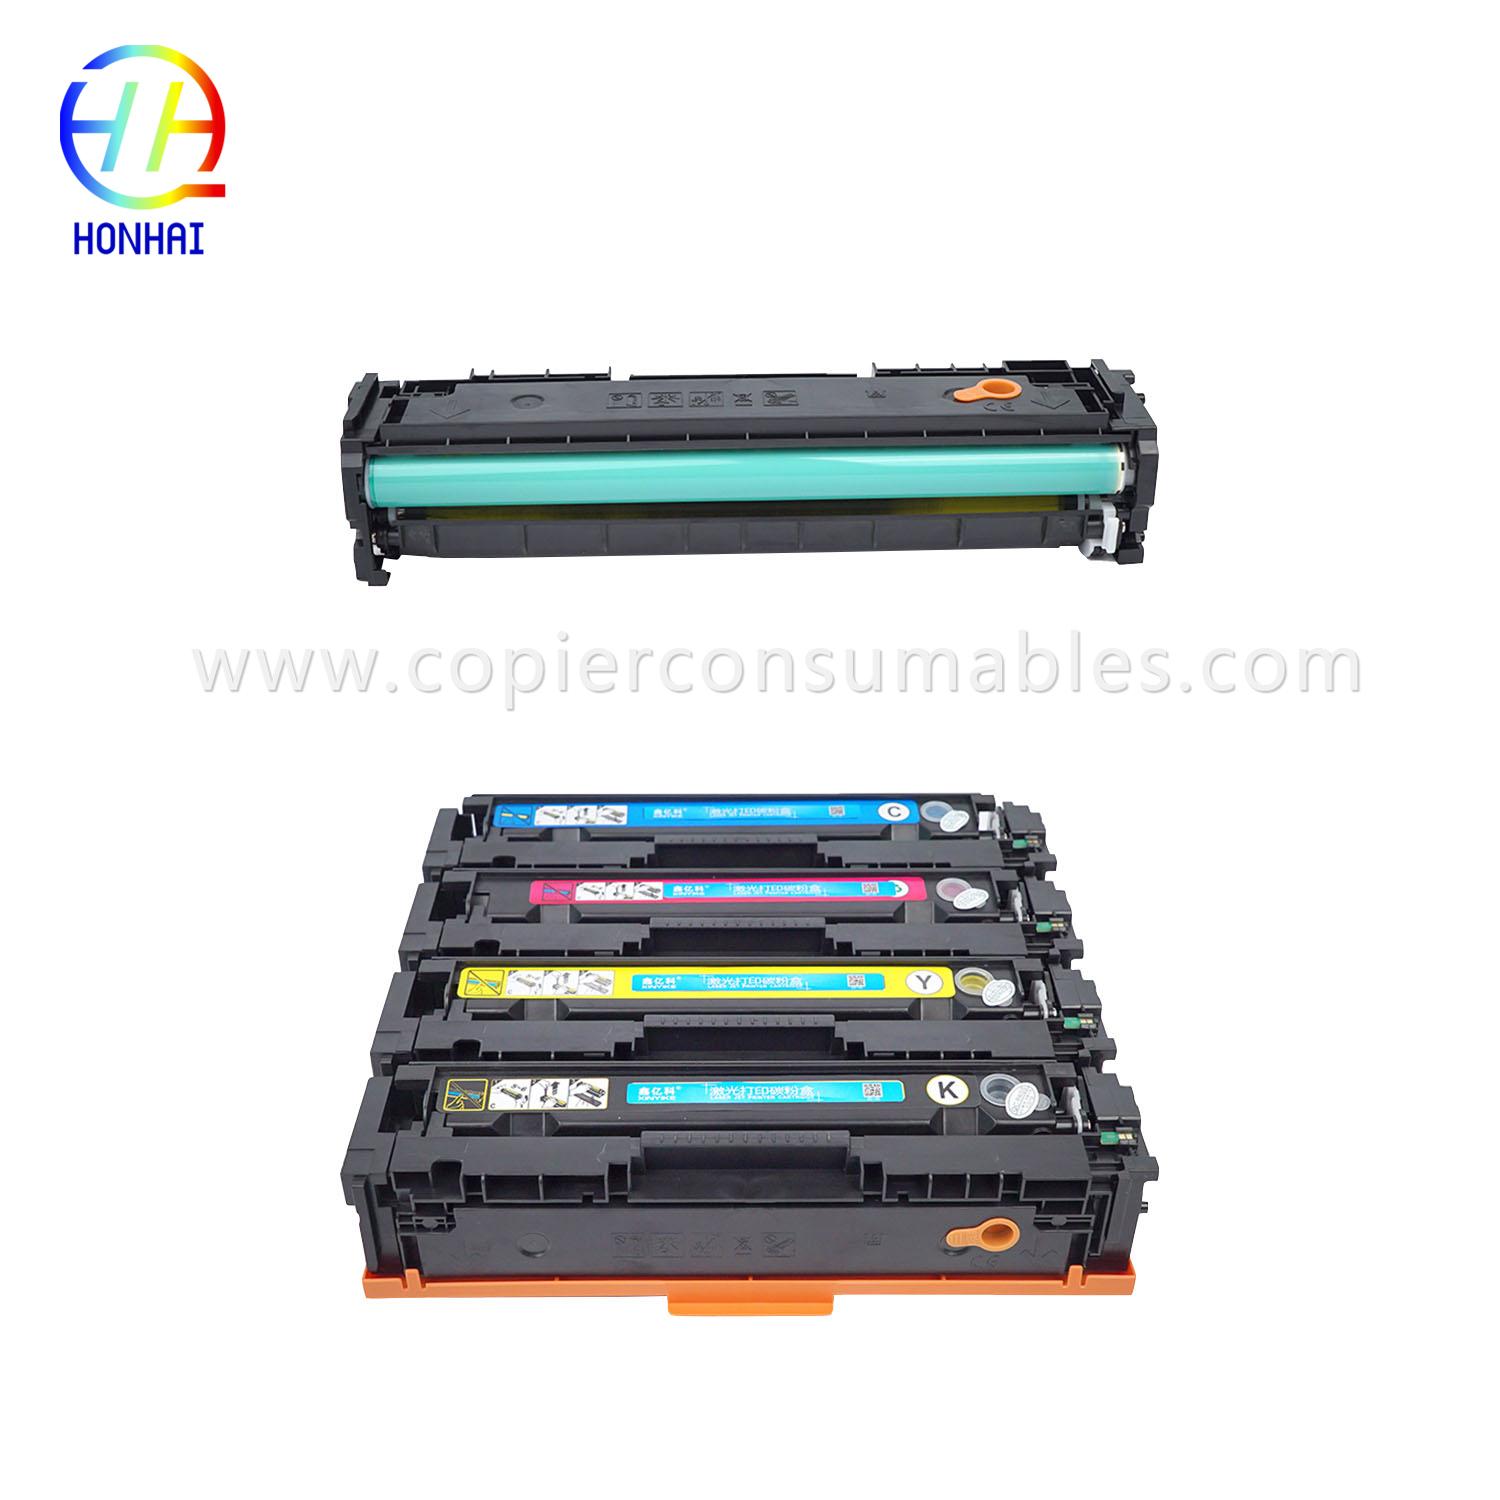 Cartridge Toner Color HP Laserjet PRO M252 M277 (CF403A) 拷贝